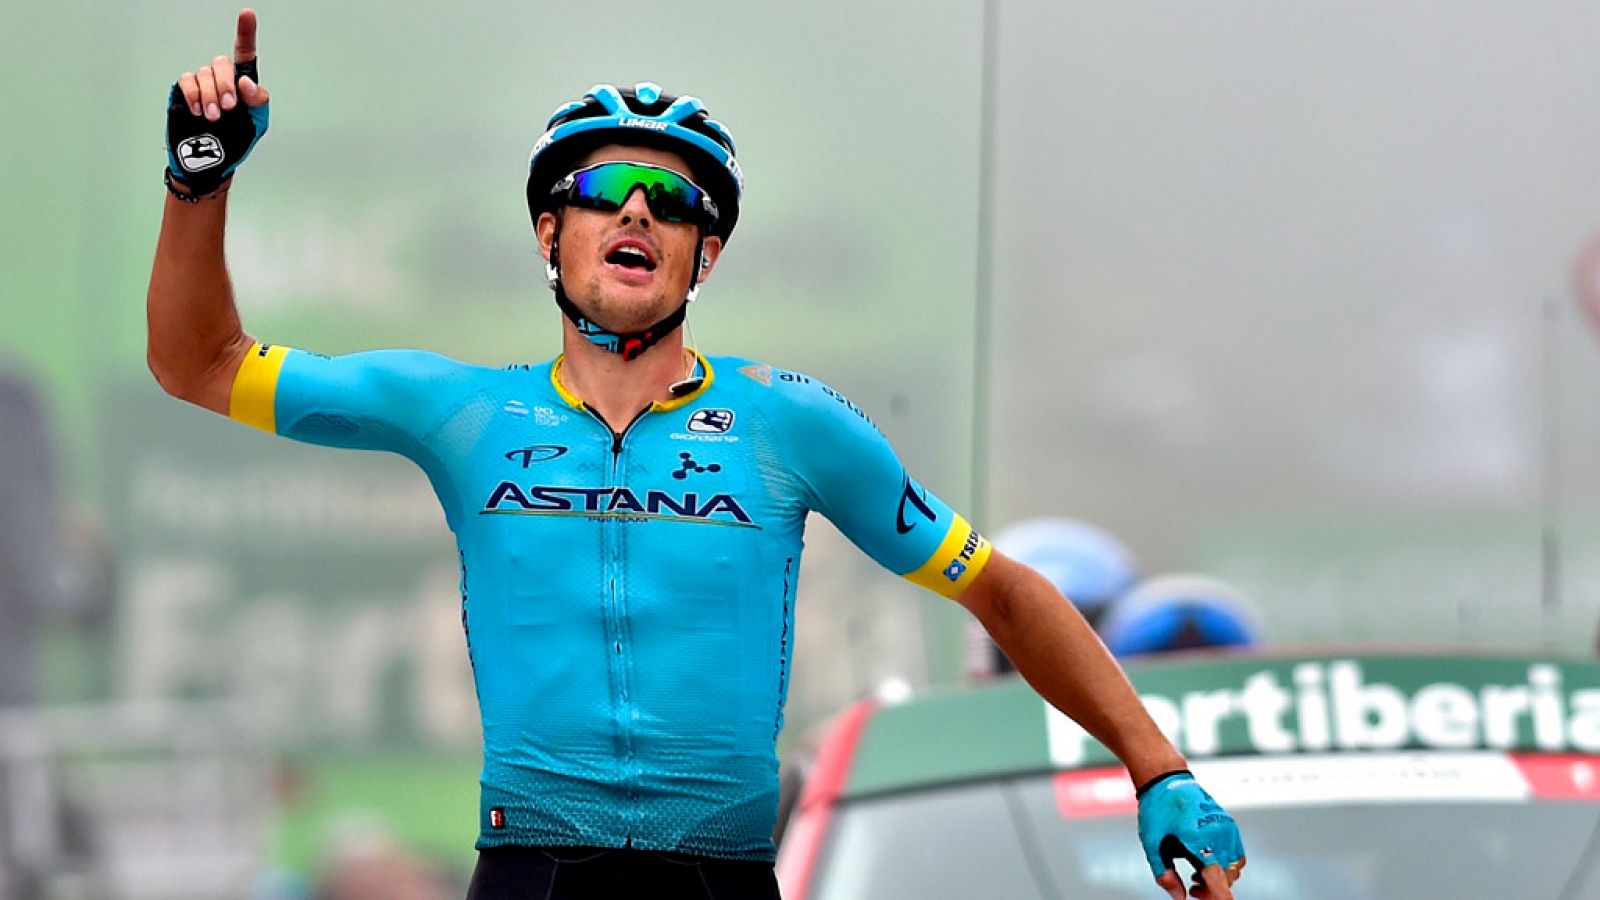 El danés Jakob Fuglsang (Astana) se ha impuesto este lunes en la decimosexta etapa de la Vuelta a España, disputada entre Pravia y el Alto de La Cubilla sobre 144,4 kilómetros, jornada tras la que mantiene de líder el esloveno Primoz Roglic (Jumbo Vi